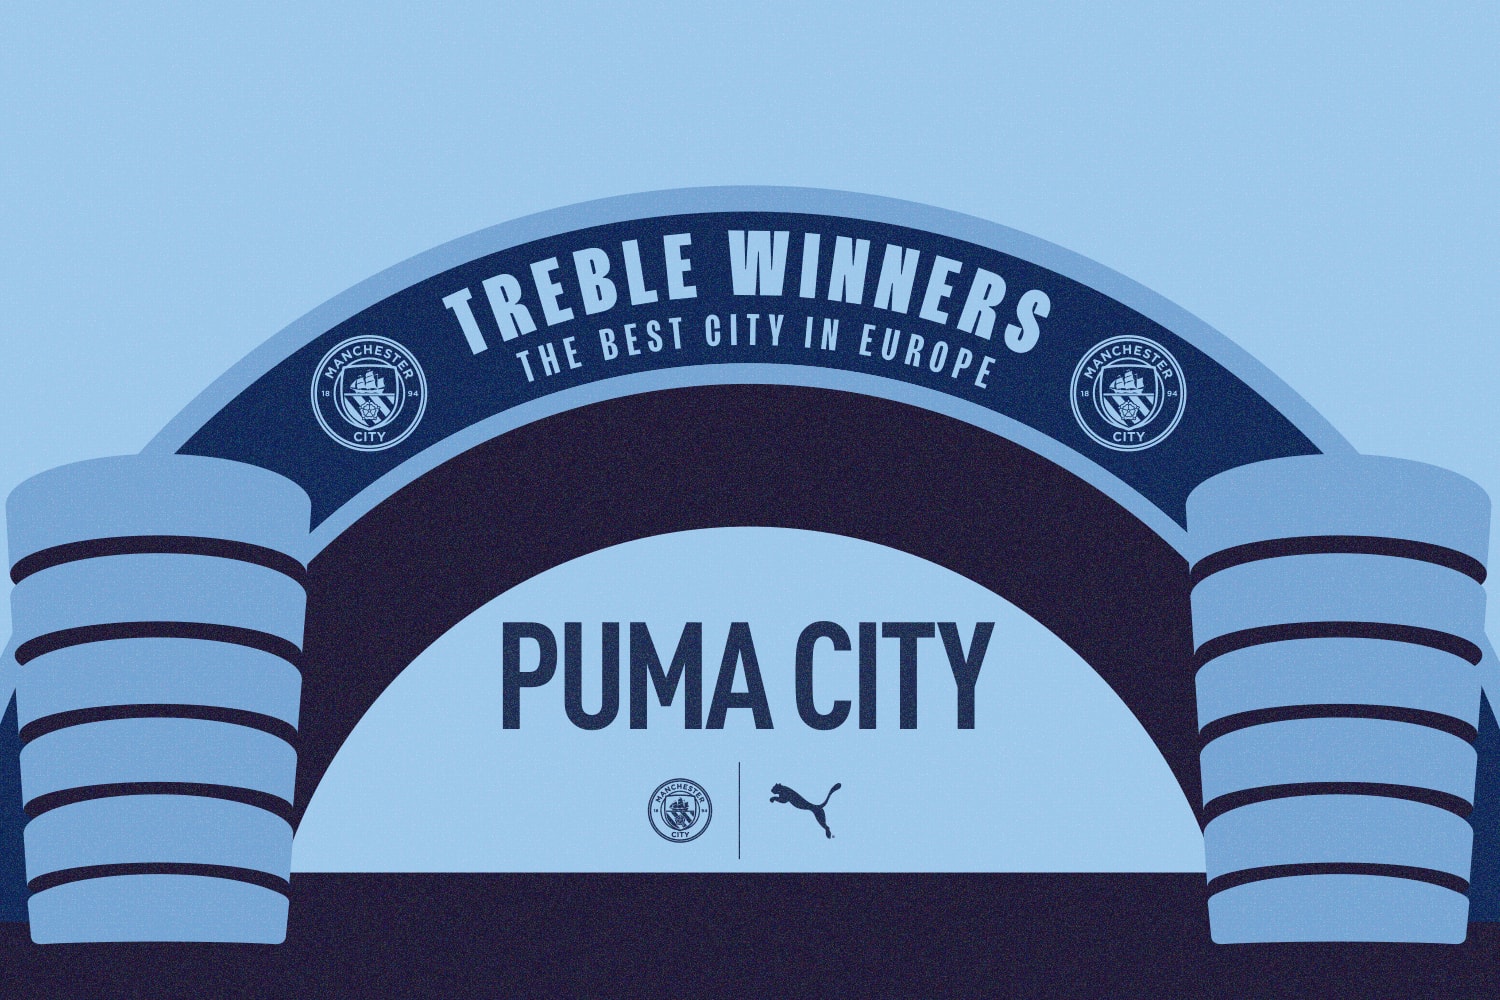 푸마, 맨체스터 시티 FC 방한 기념 팝업 스토어 ‘푸마 시티’ 오픈 puma city manchester city FC Treble winners pop up store